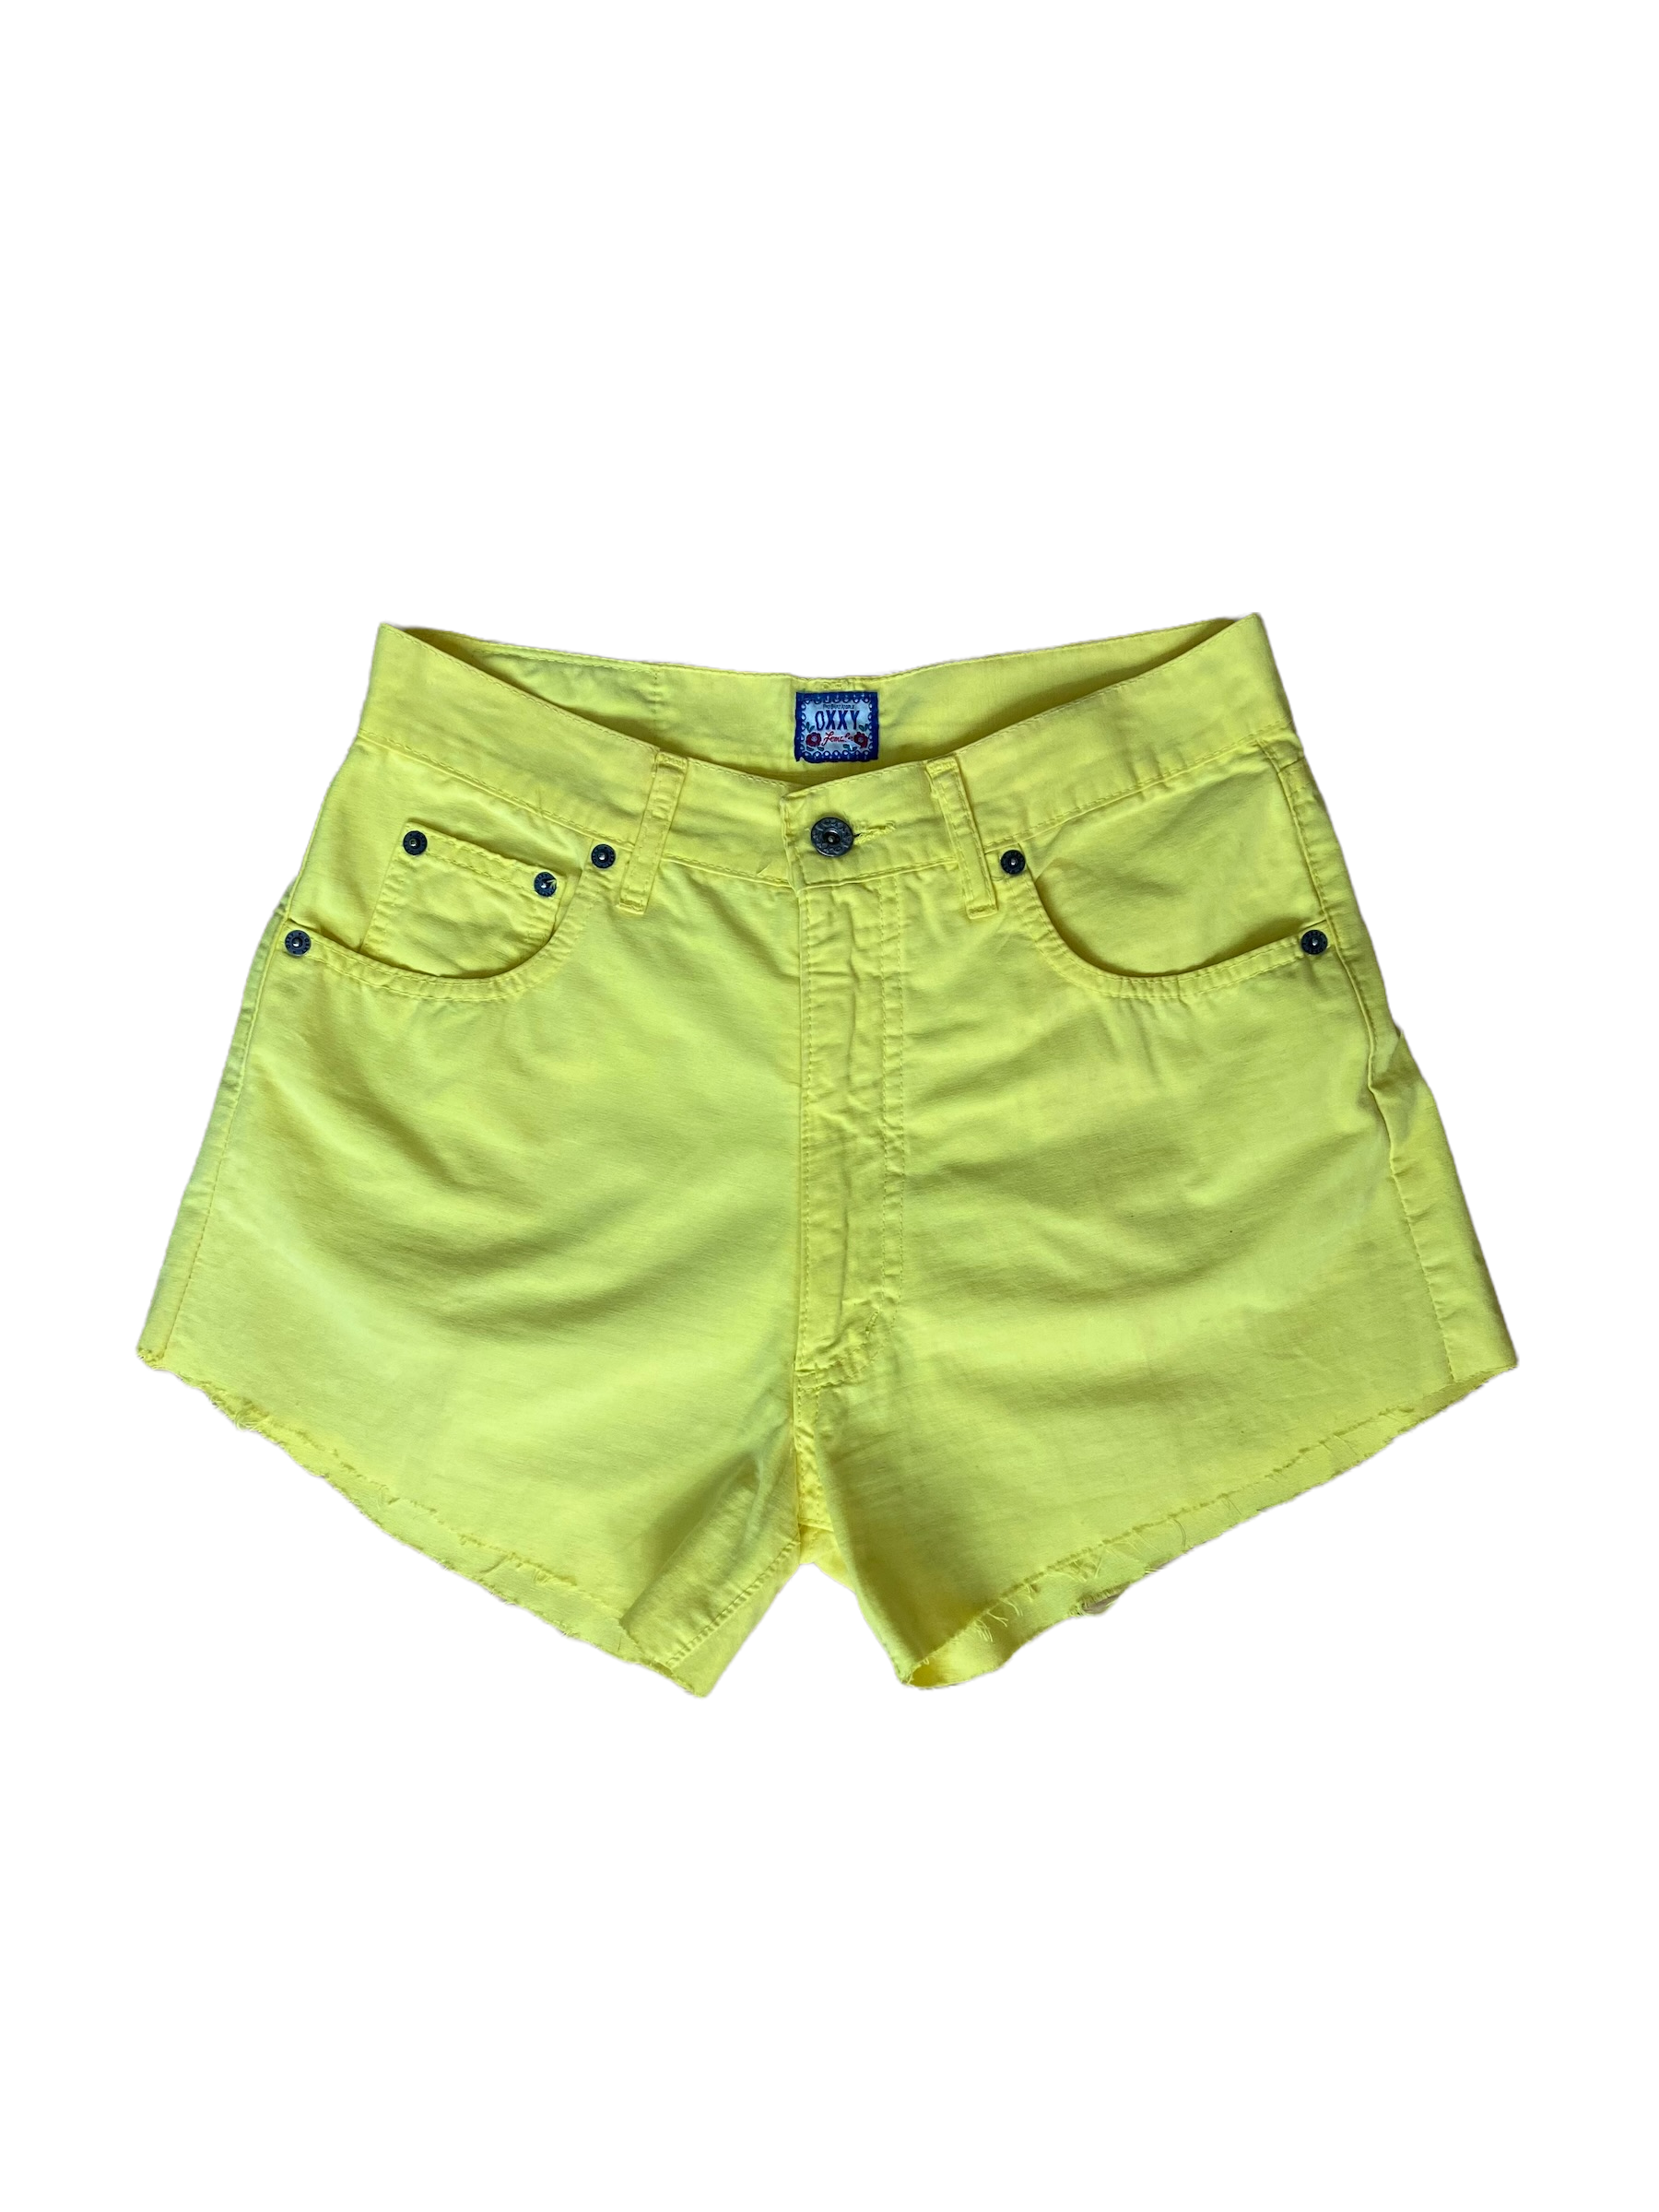 Shorts – Still Thrifting